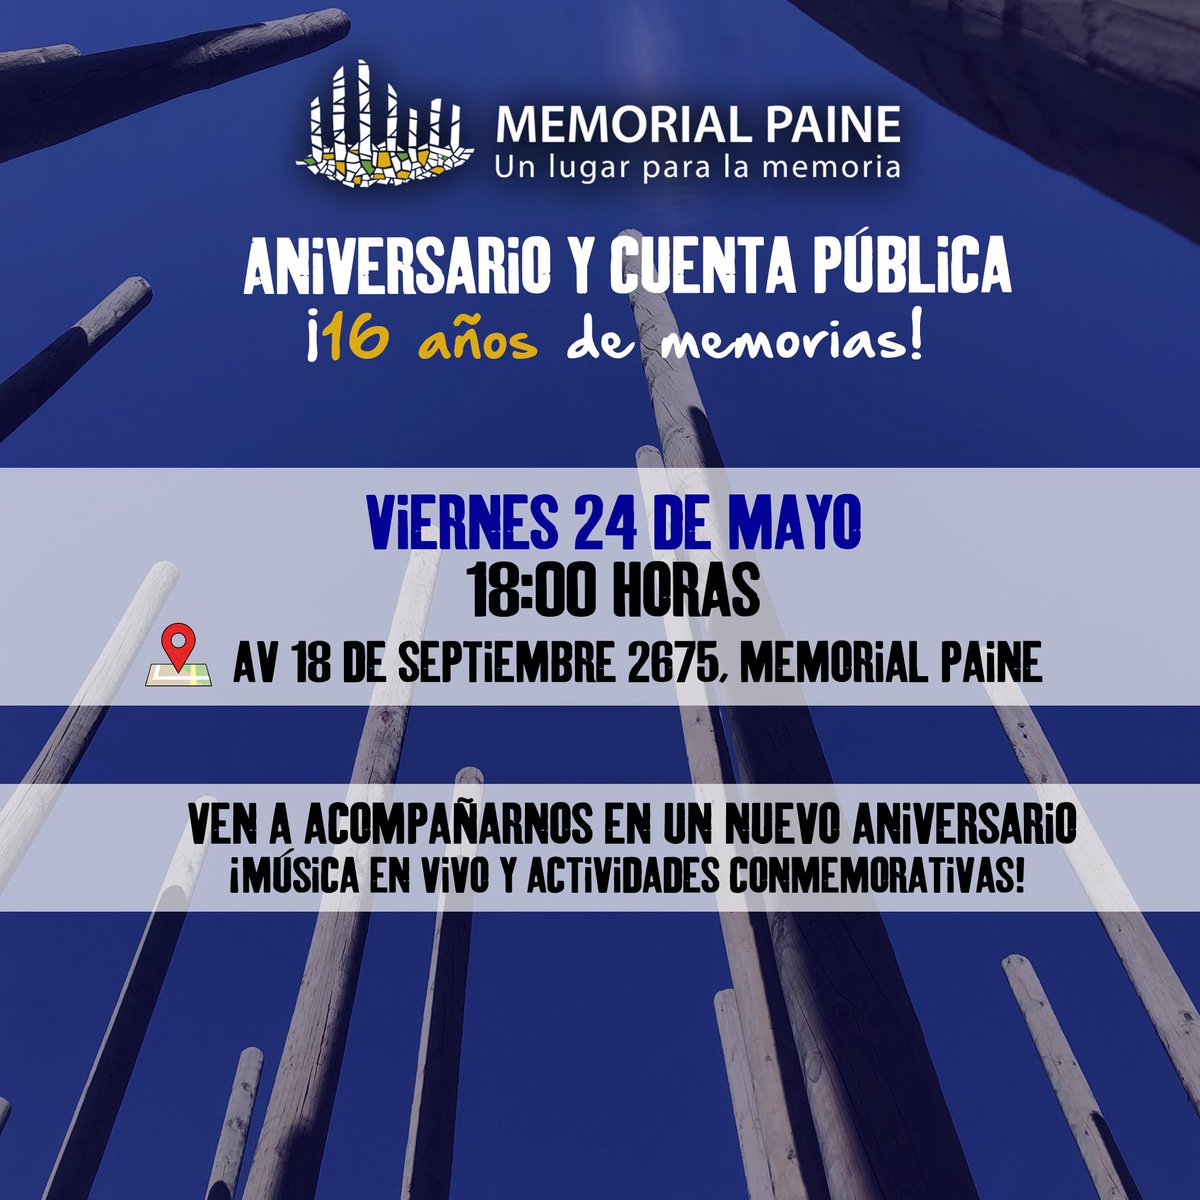 ✊ Te esperamos el 24 de mayo desde las 18:00 horas para ser parte de nuestro 16° aniversario y Cuenta Pública 2023! ¡La lucha por la memoria no se termina con los 50 años!
#Memoria
#DDHH
#Paine
#CuentaPública
#NuncaMás
#NoMásImpunidad
#DóndeEstán
#JusticiayMemoria